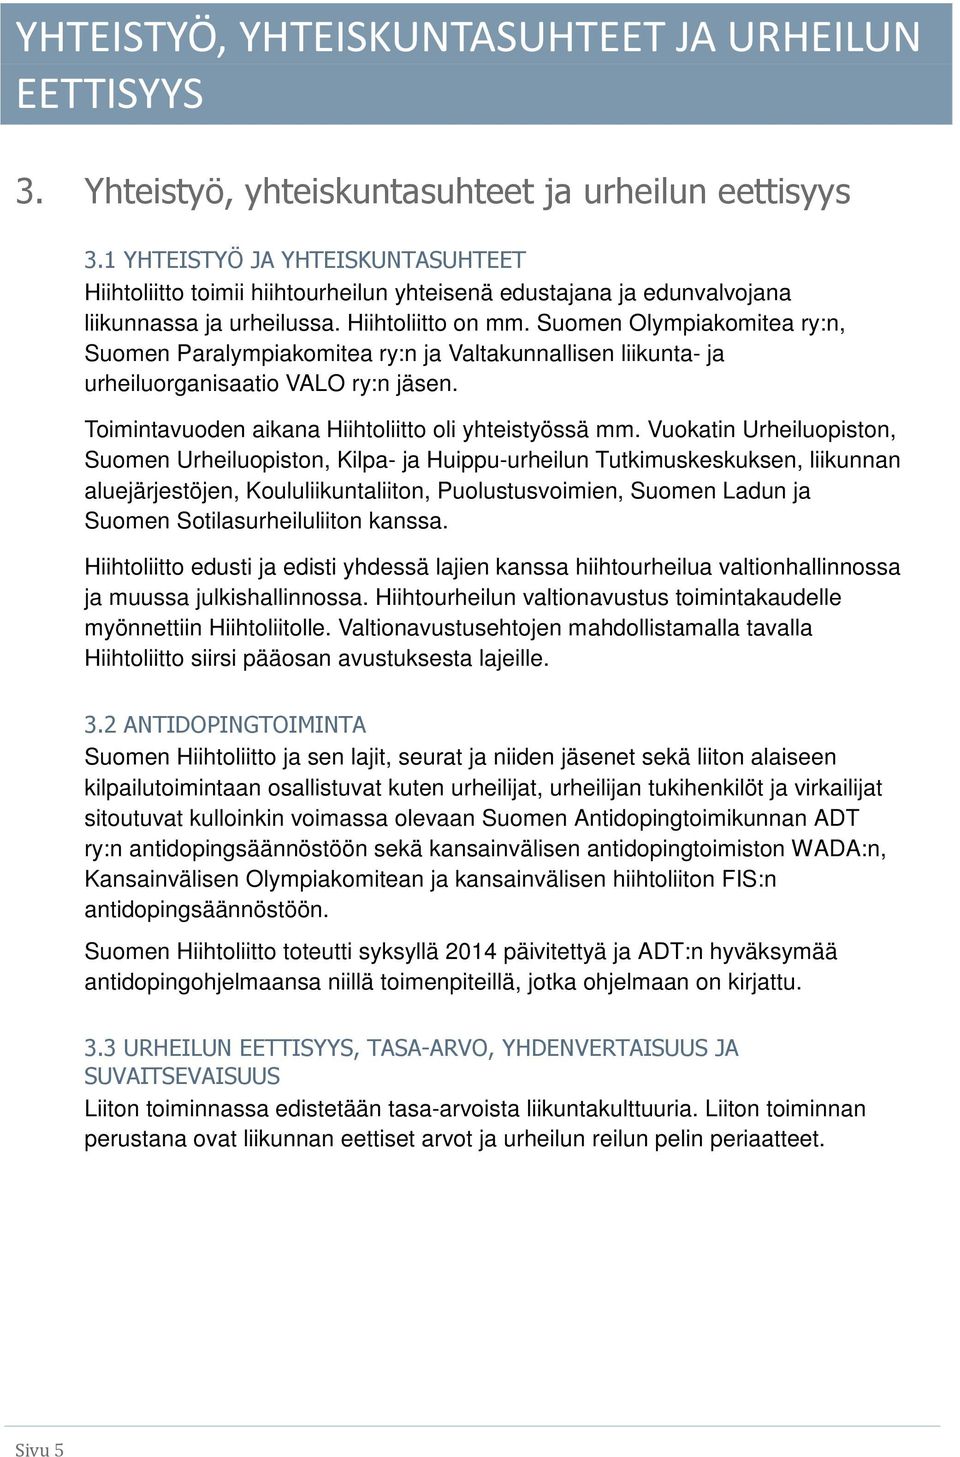 Suomen Olympiakomitea ry:n, Suomen Paralympiakomitea ry:n ja Valtakunnallisen liikunta- ja urheiluorganisaatio VALO ry:n jäsen. Toimintavuoden aikana Hiihtoliitto oli yhteistyössä mm.